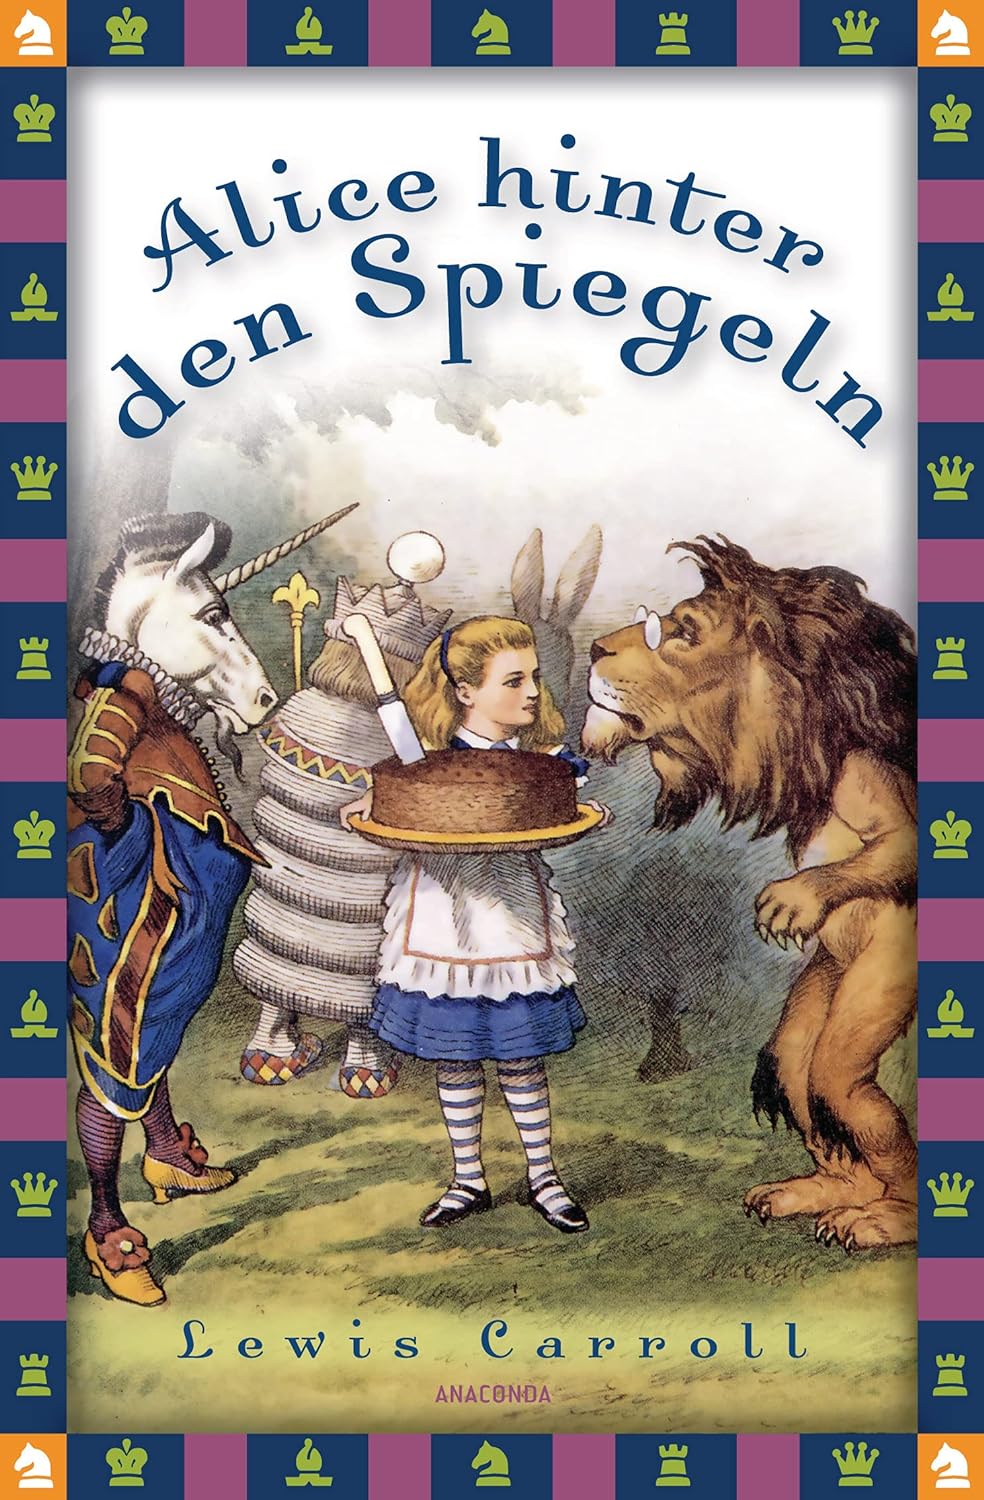 Lewis Carroll: Alice hinter den Spiegeln (German language, 1981, Insel Verlag)